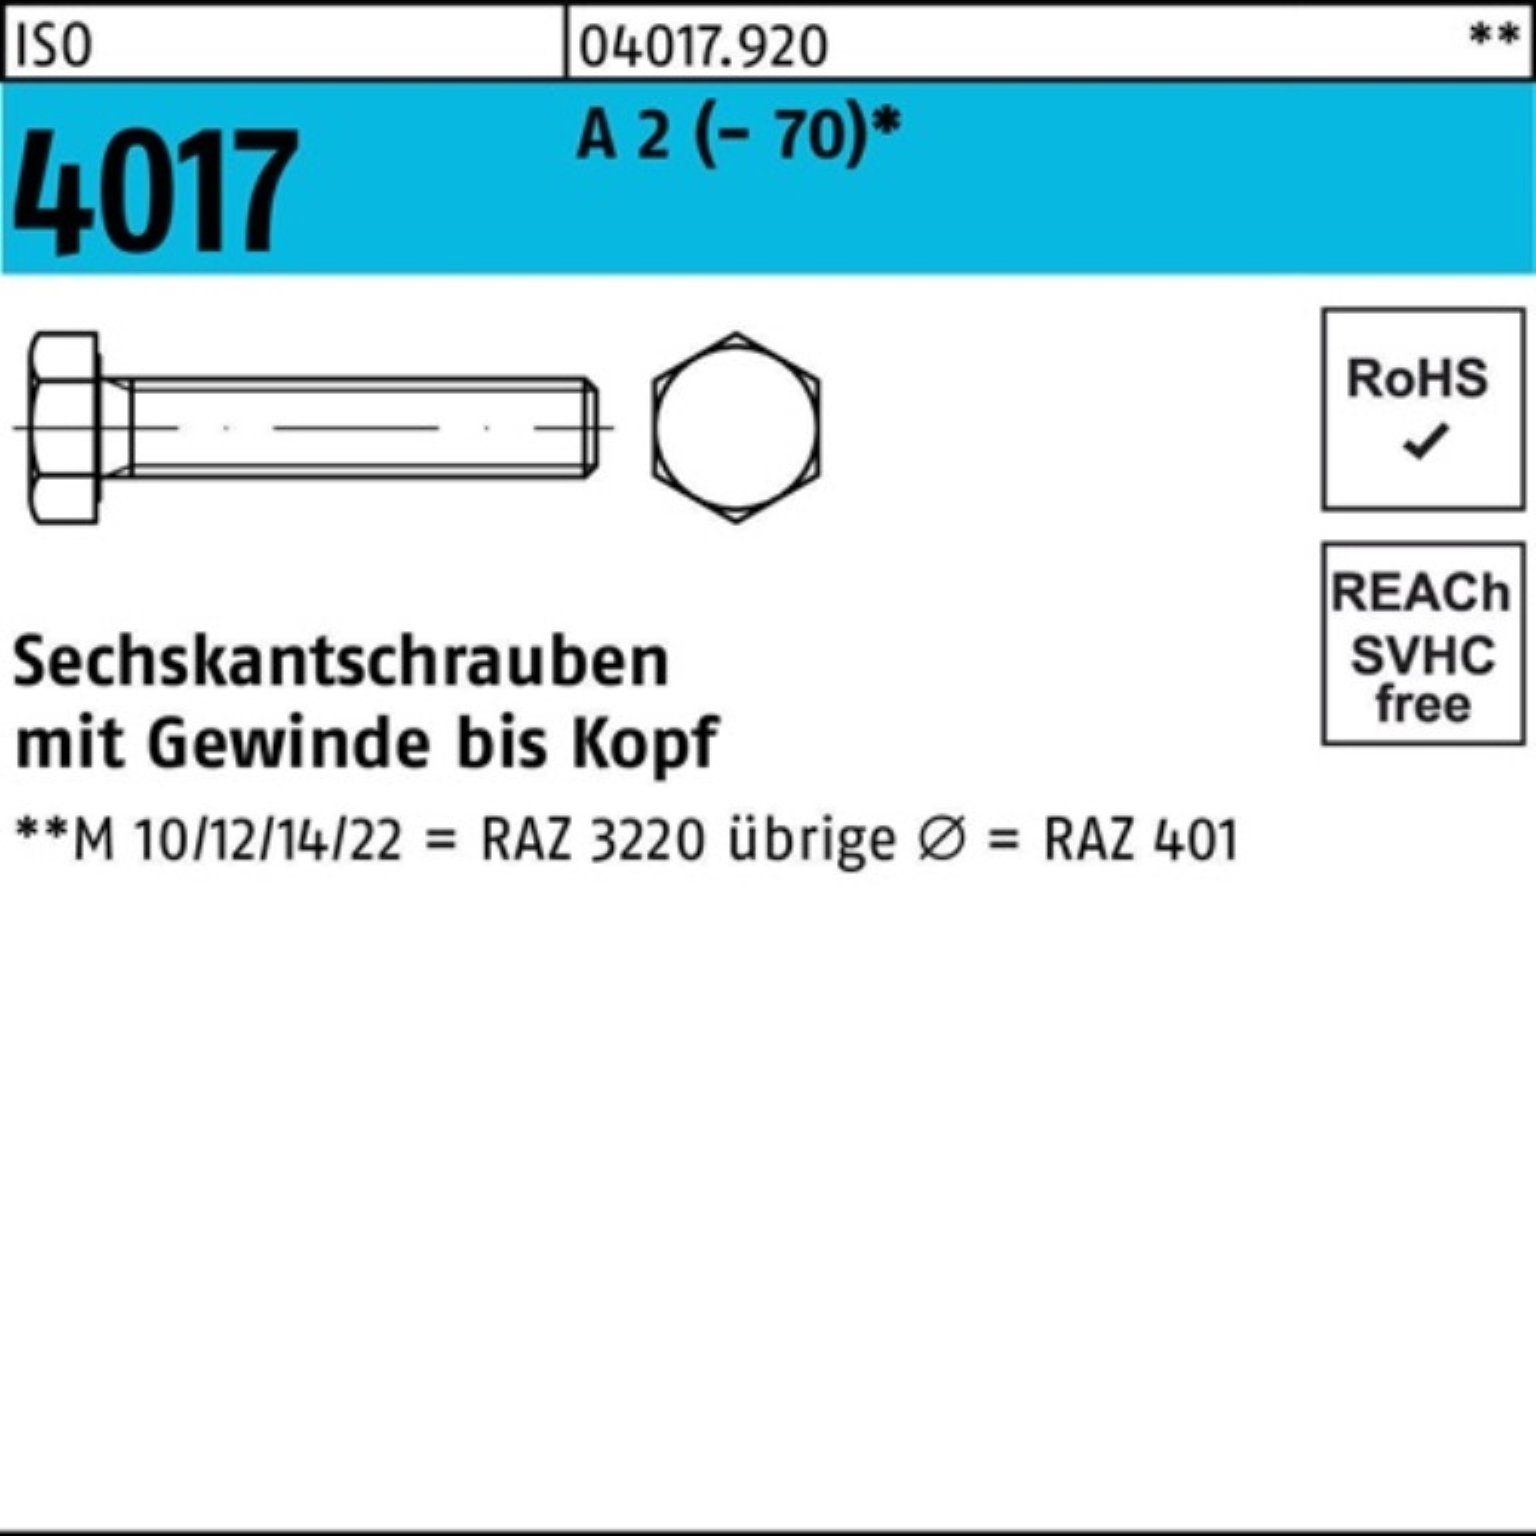 (70) Sechskantschraube 100er 100 Pack Stück A 4017 M36x Bufab 2 VG 1 ISO Sechskantschraube